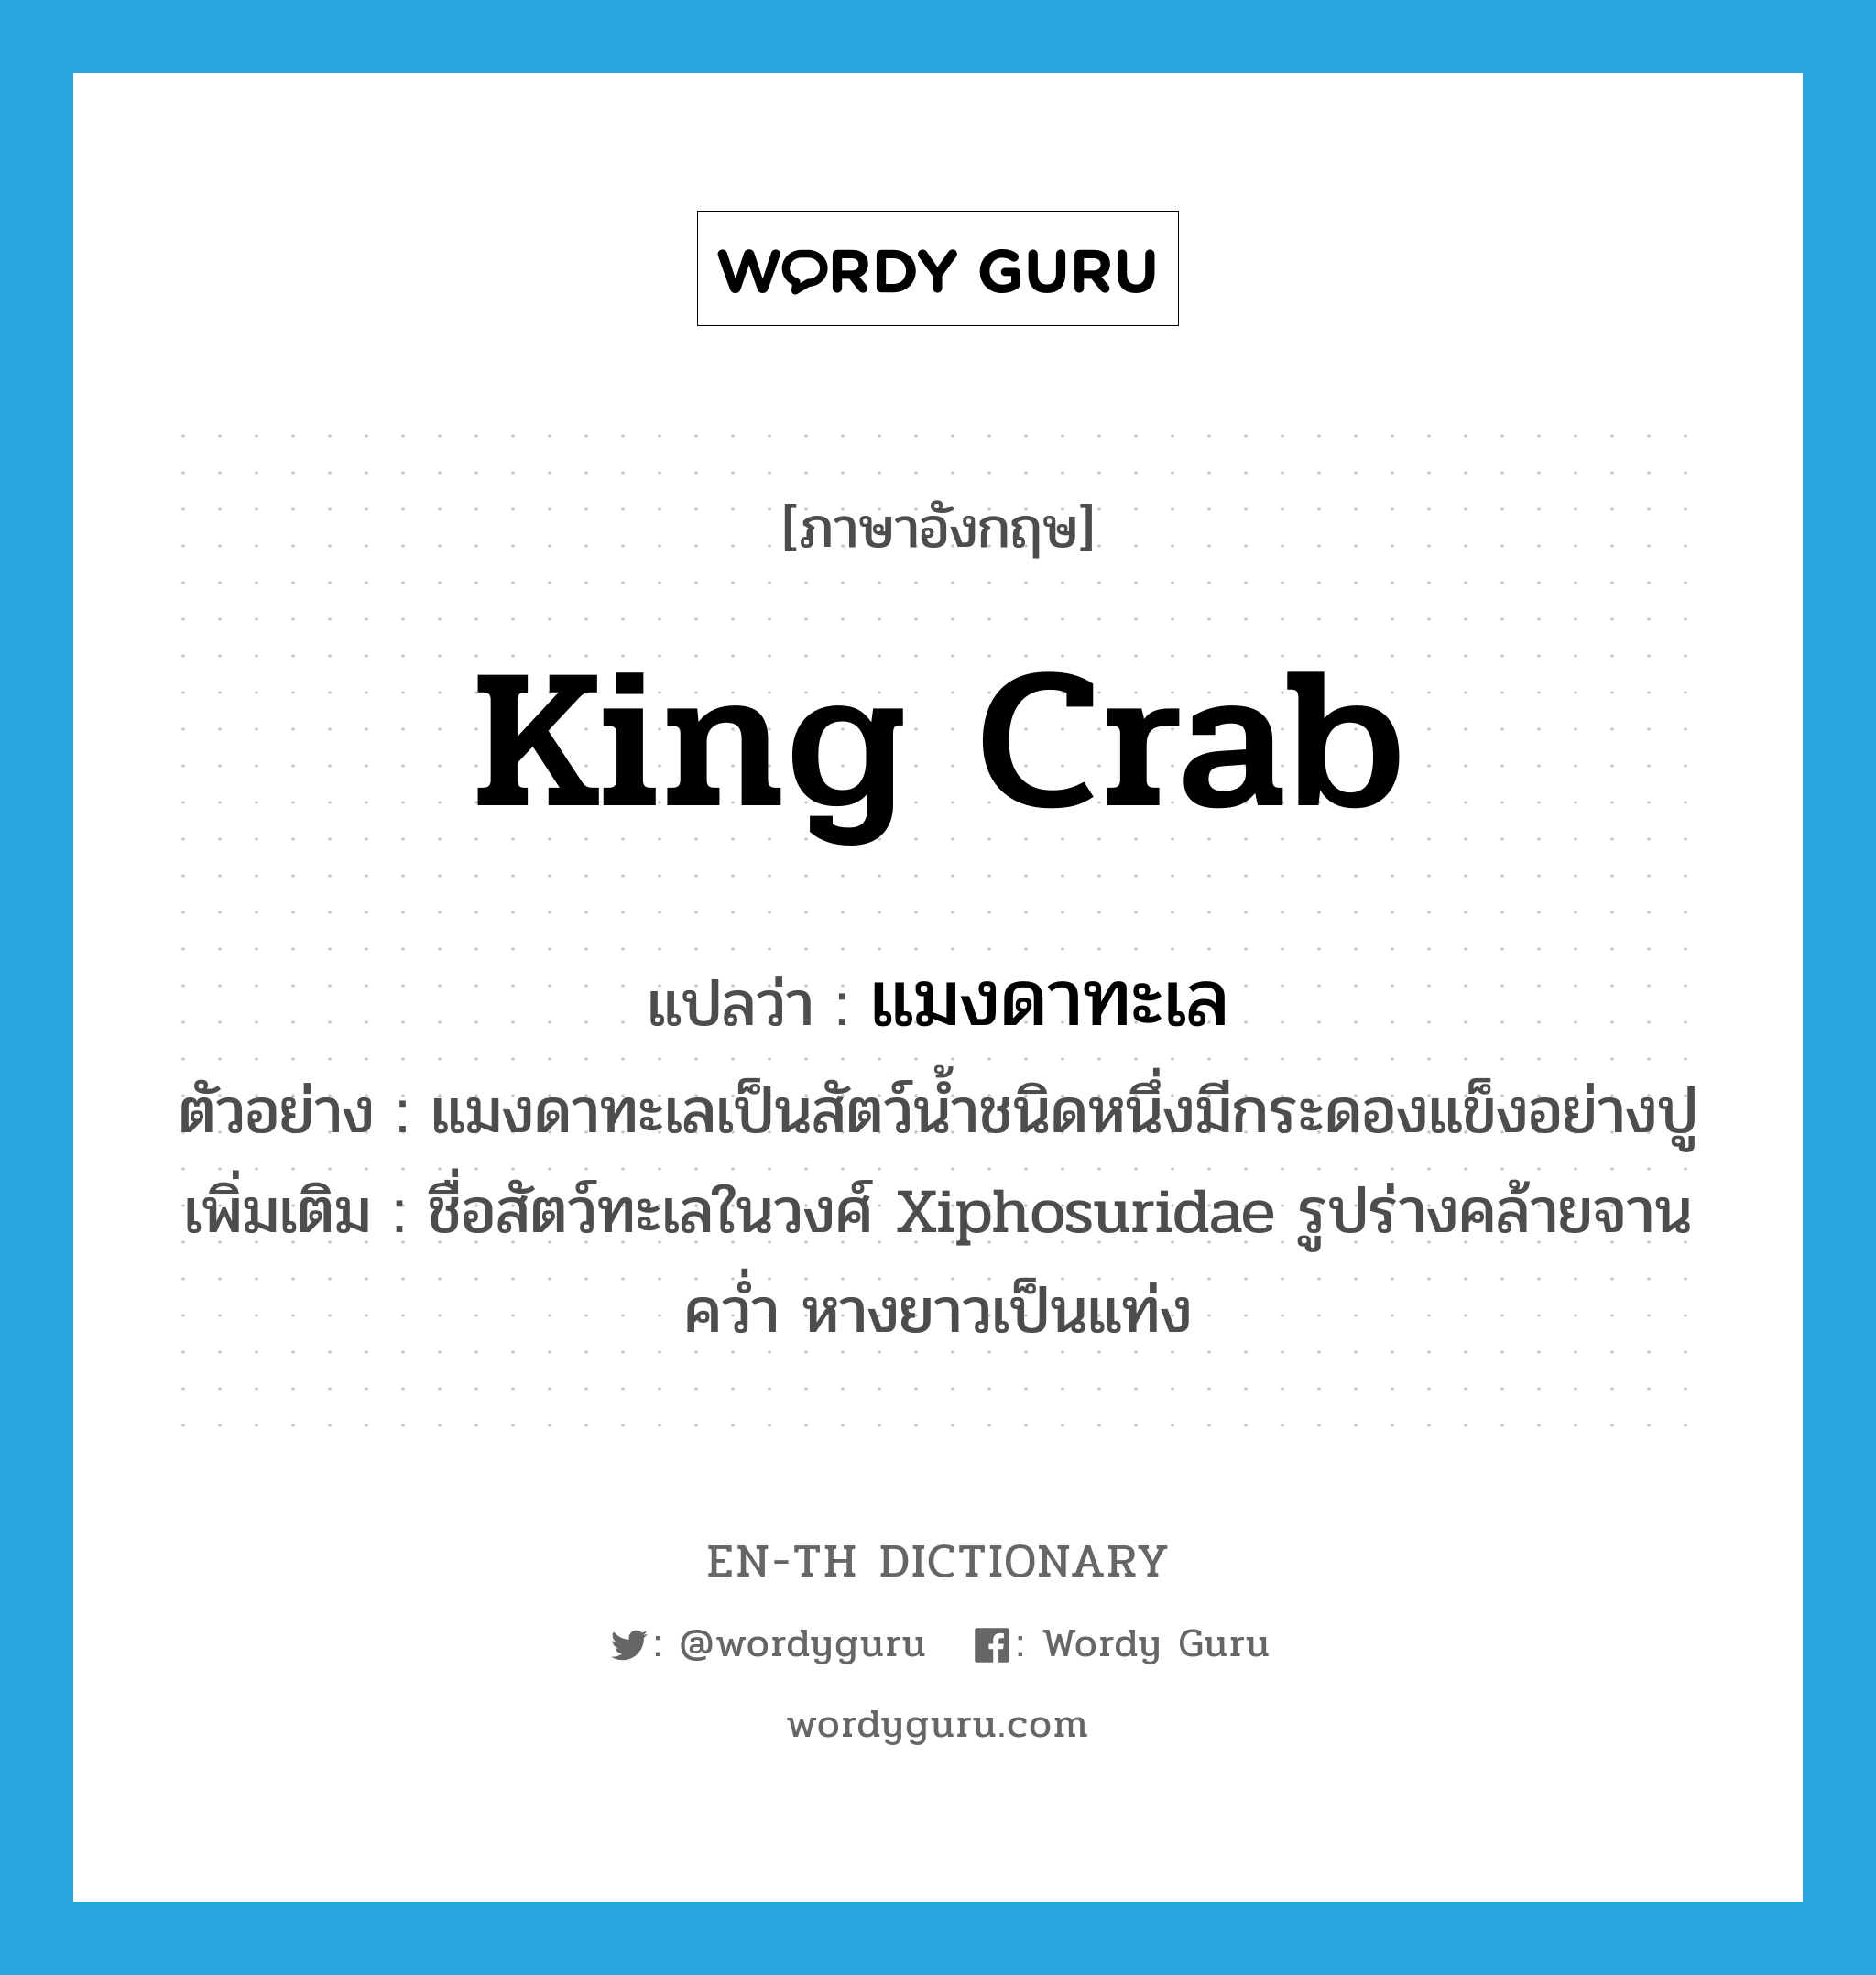 king crab แปลว่า?, คำศัพท์ภาษาอังกฤษ king crab แปลว่า แมงดาทะเล ประเภท N ตัวอย่าง แมงดาทะเลเป็นสัตว์น้ำชนิดหนึ่งมีกระดองแข็งอย่างปู เพิ่มเติม ชื่อสัตว์ทะเลในวงศ์ Xiphosuridae รูปร่างคล้ายจานคว่ำ หางยาวเป็นแท่ง หมวด N